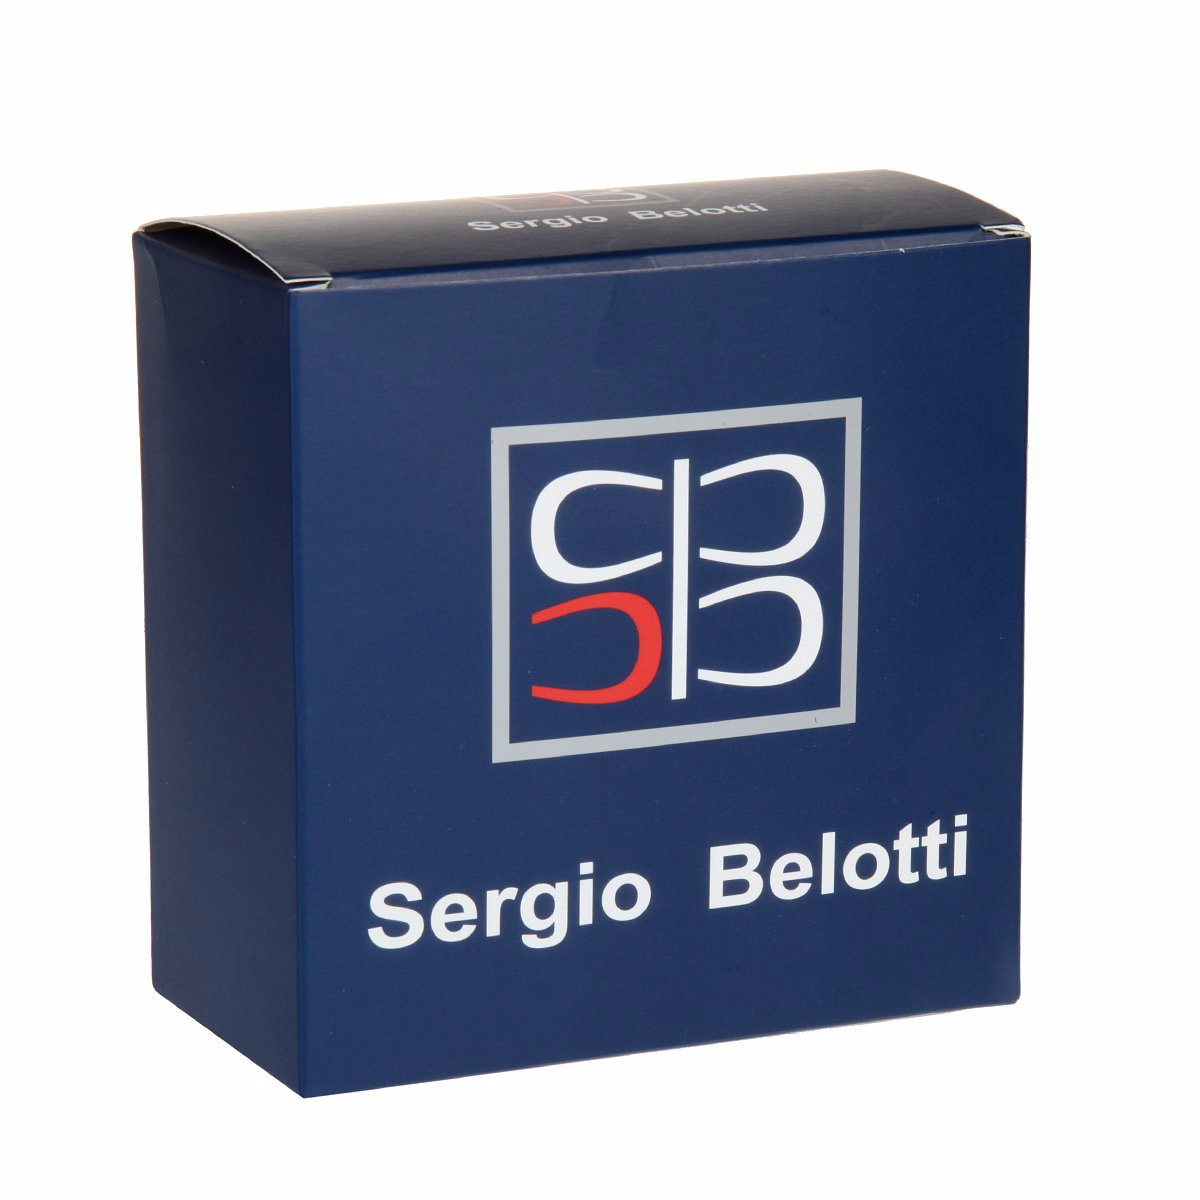 Ремень
Sergio Belotti
2042/40 Nero Ремни и пояса